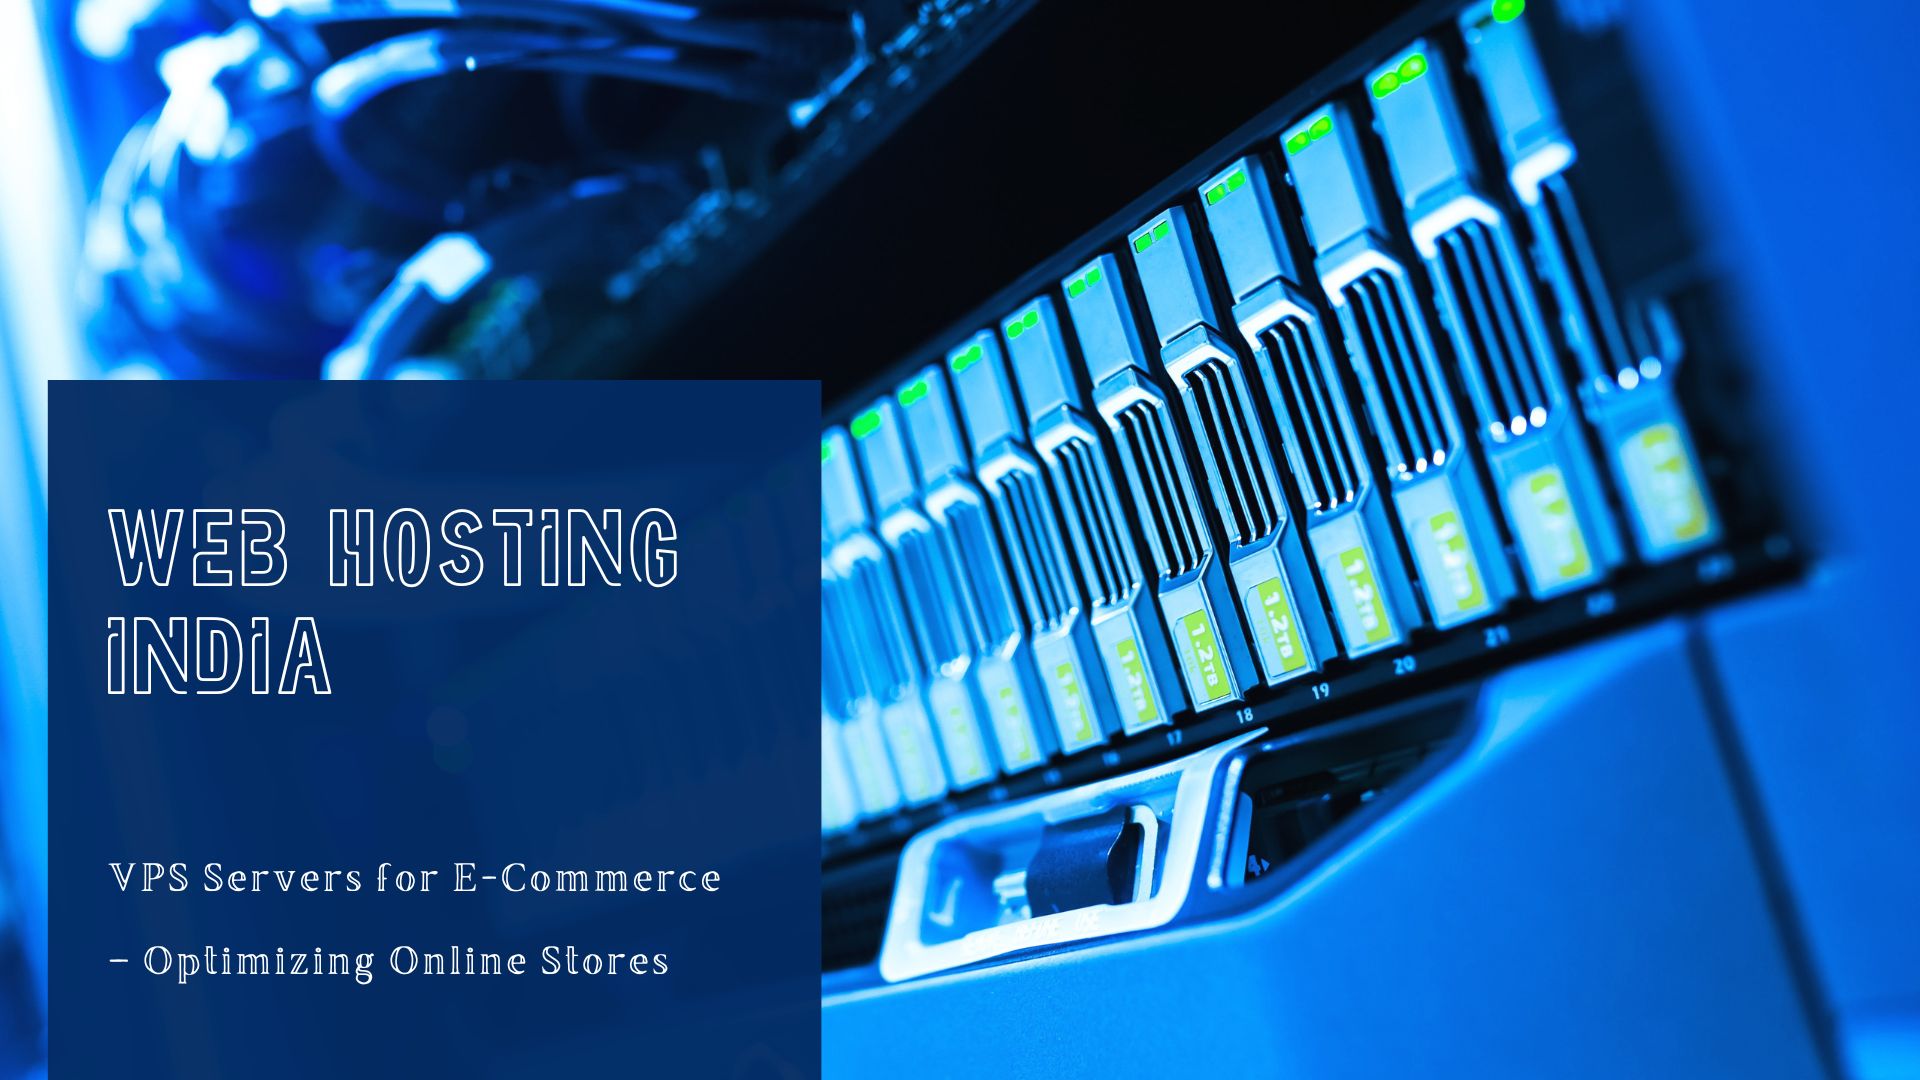 Web Hosting India: VPS Servers for E-Commerce – Optimizing Online Stores